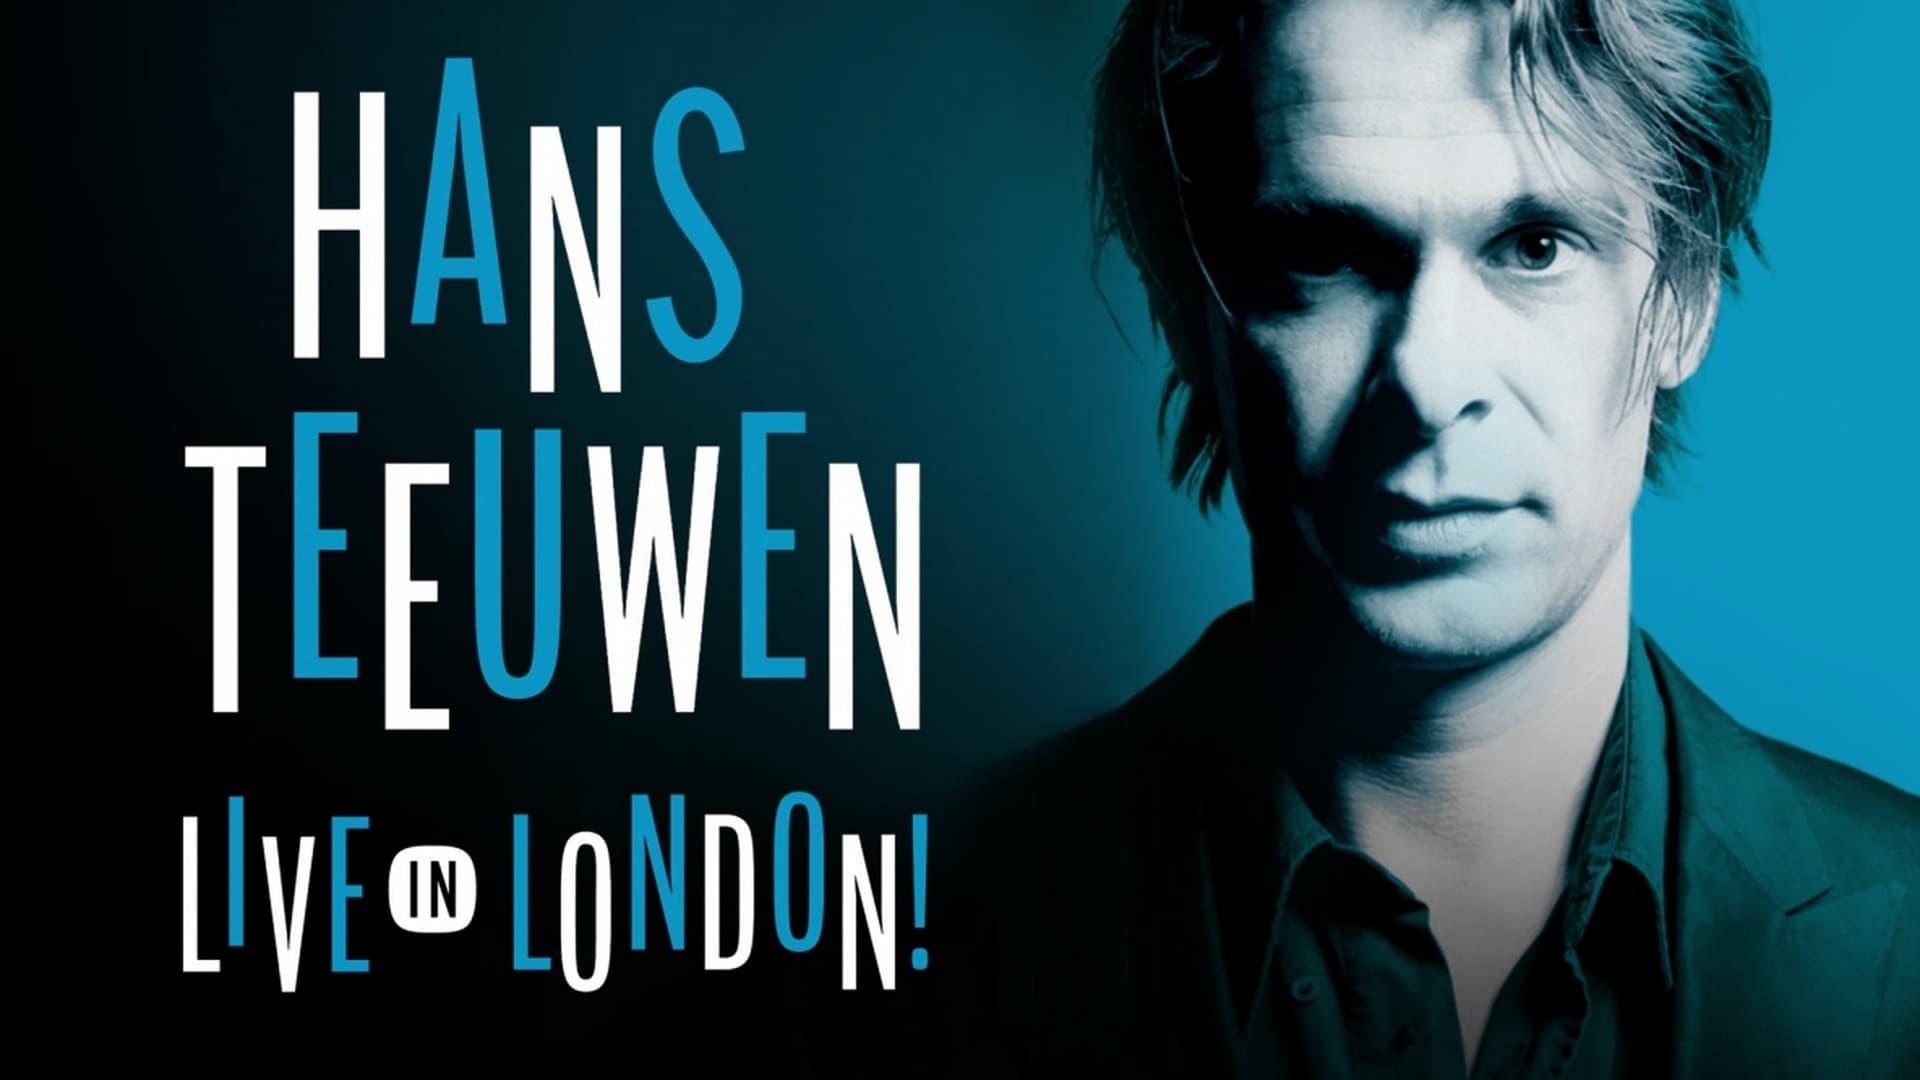 Hans Teeuwen: Live in London backdrop